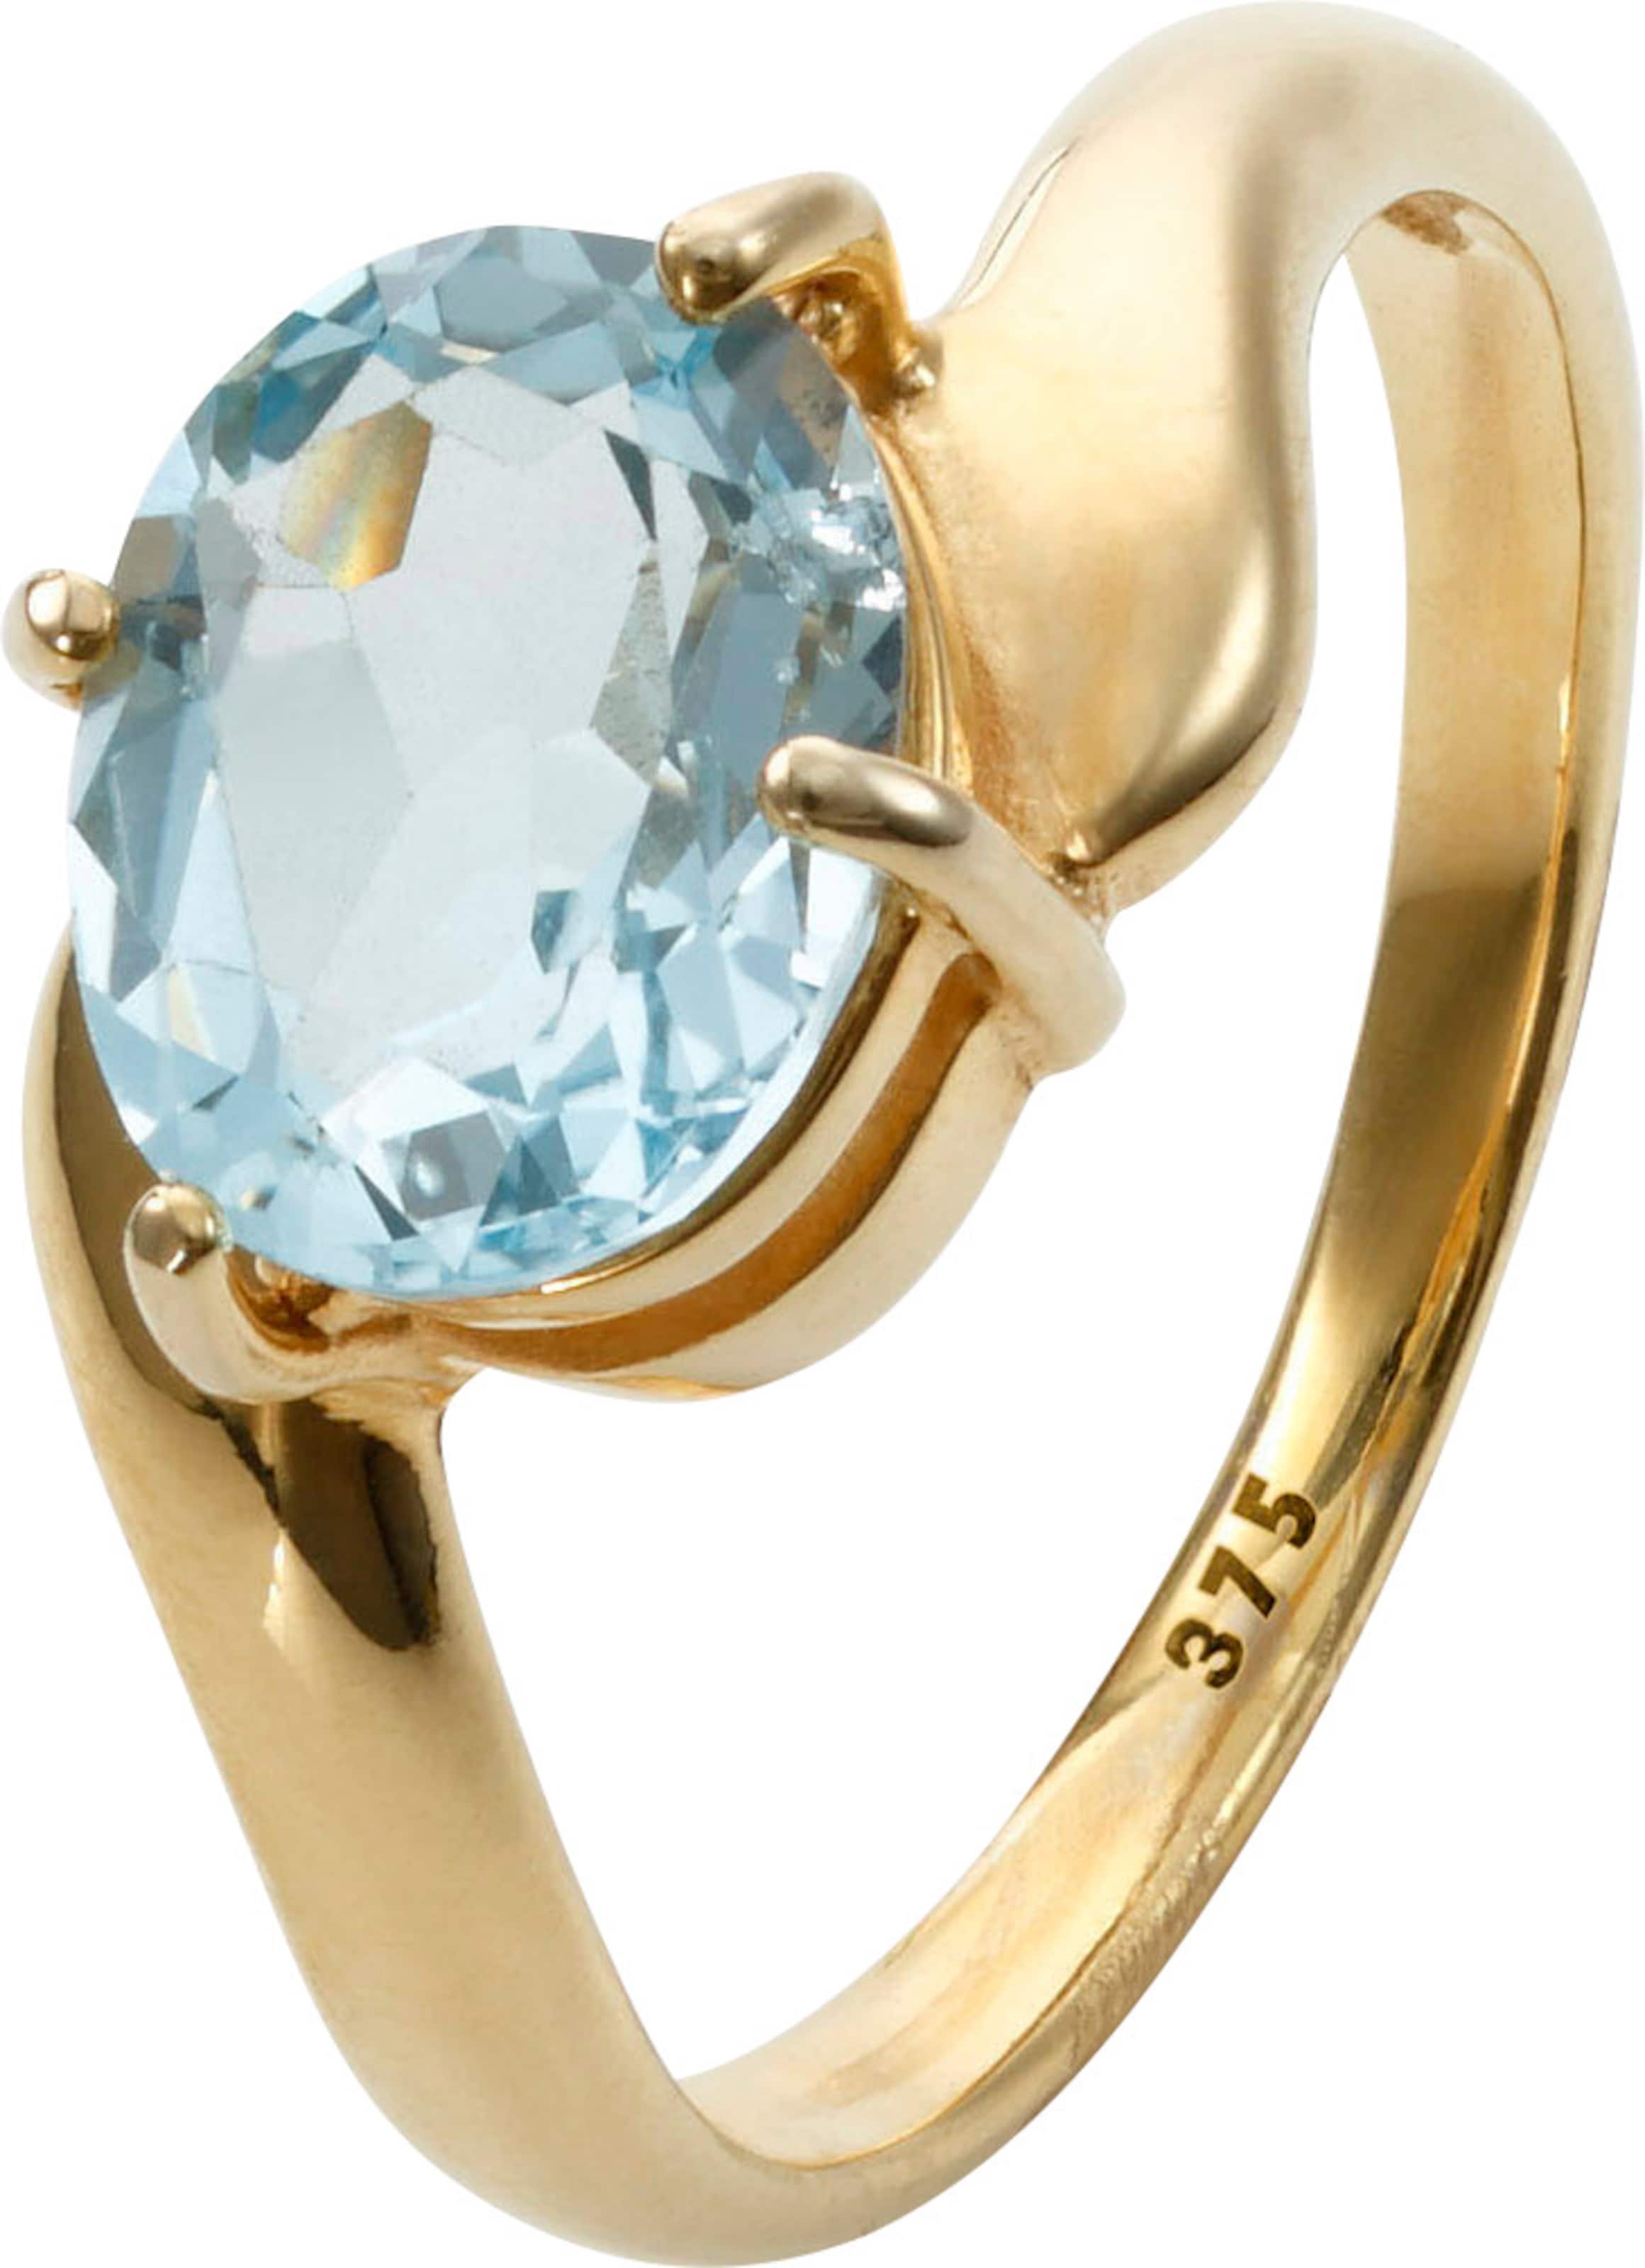 von 5 günstig Kaufen-Ring in Gelbgold 375 von heine. Ring in Gelbgold 375 von heine <![CDATA[Aparter Ring mit ovalem Blautopas (ca. 9x7 mm) in Krappenfassung. Aus 375er Gelbgold.]]>. 